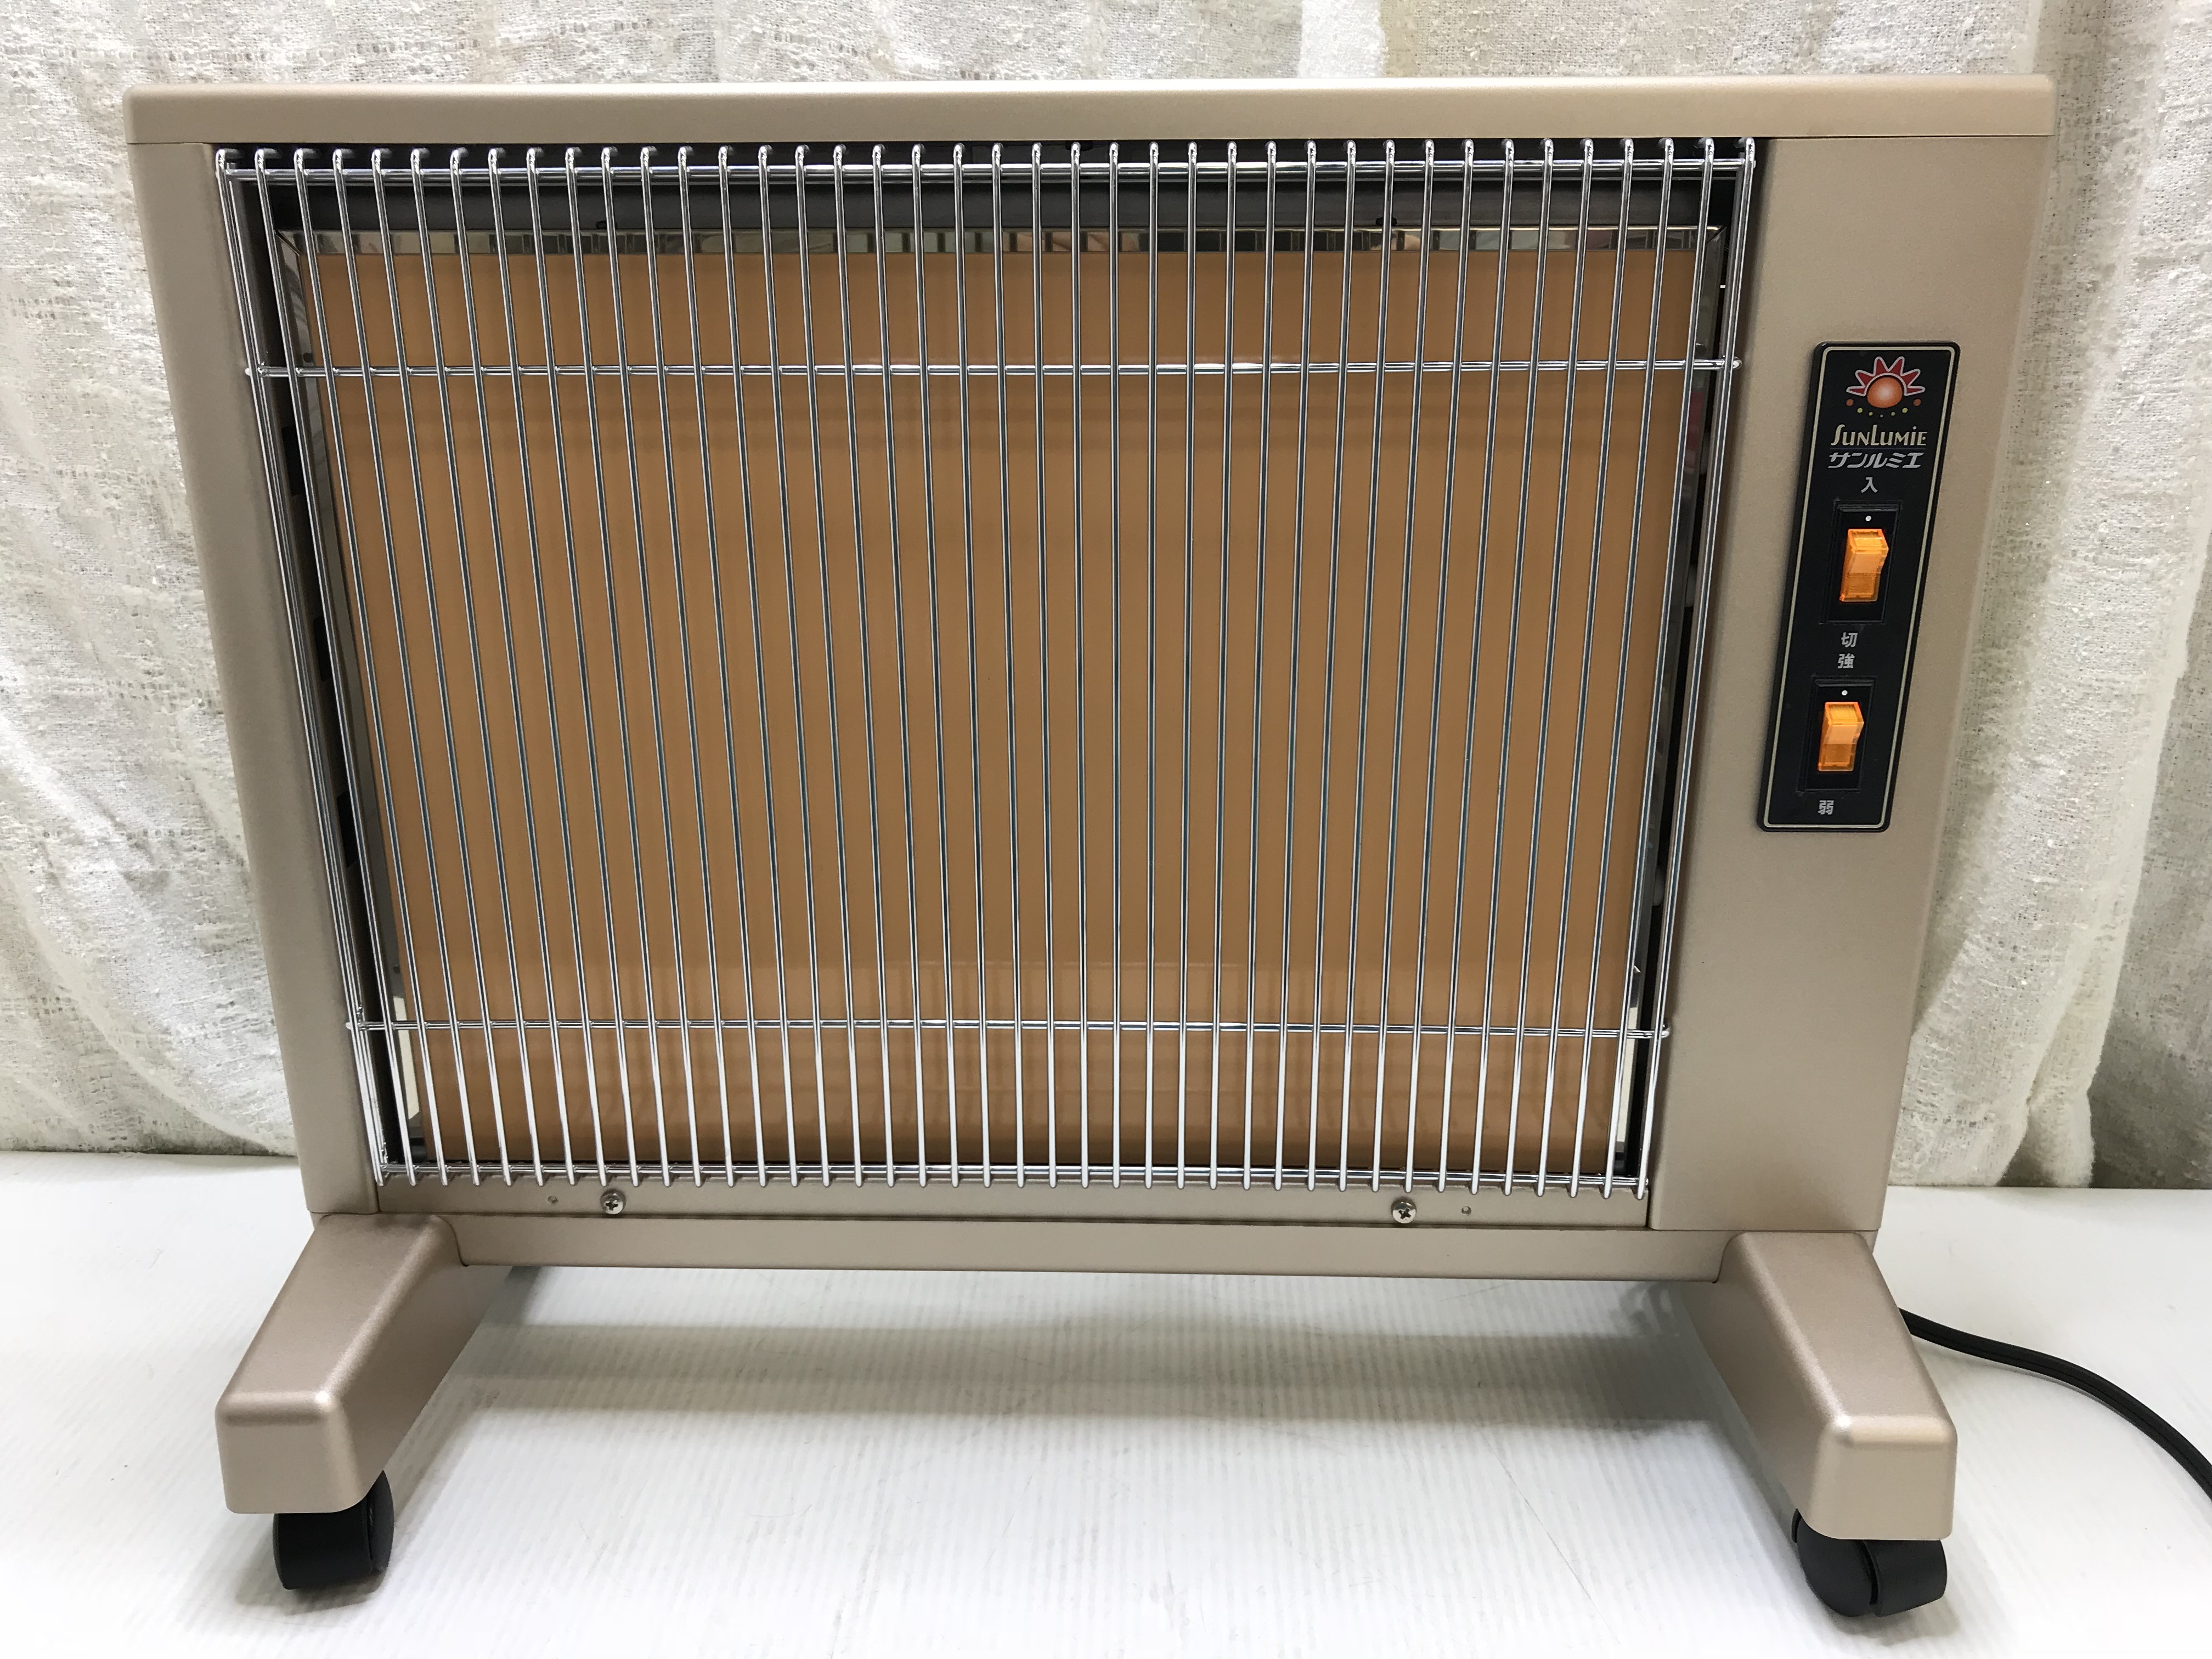 暖房器具 NEK 遠赤外線暖房器 サンルミエ キュート E800LS 伊勢市松阪市